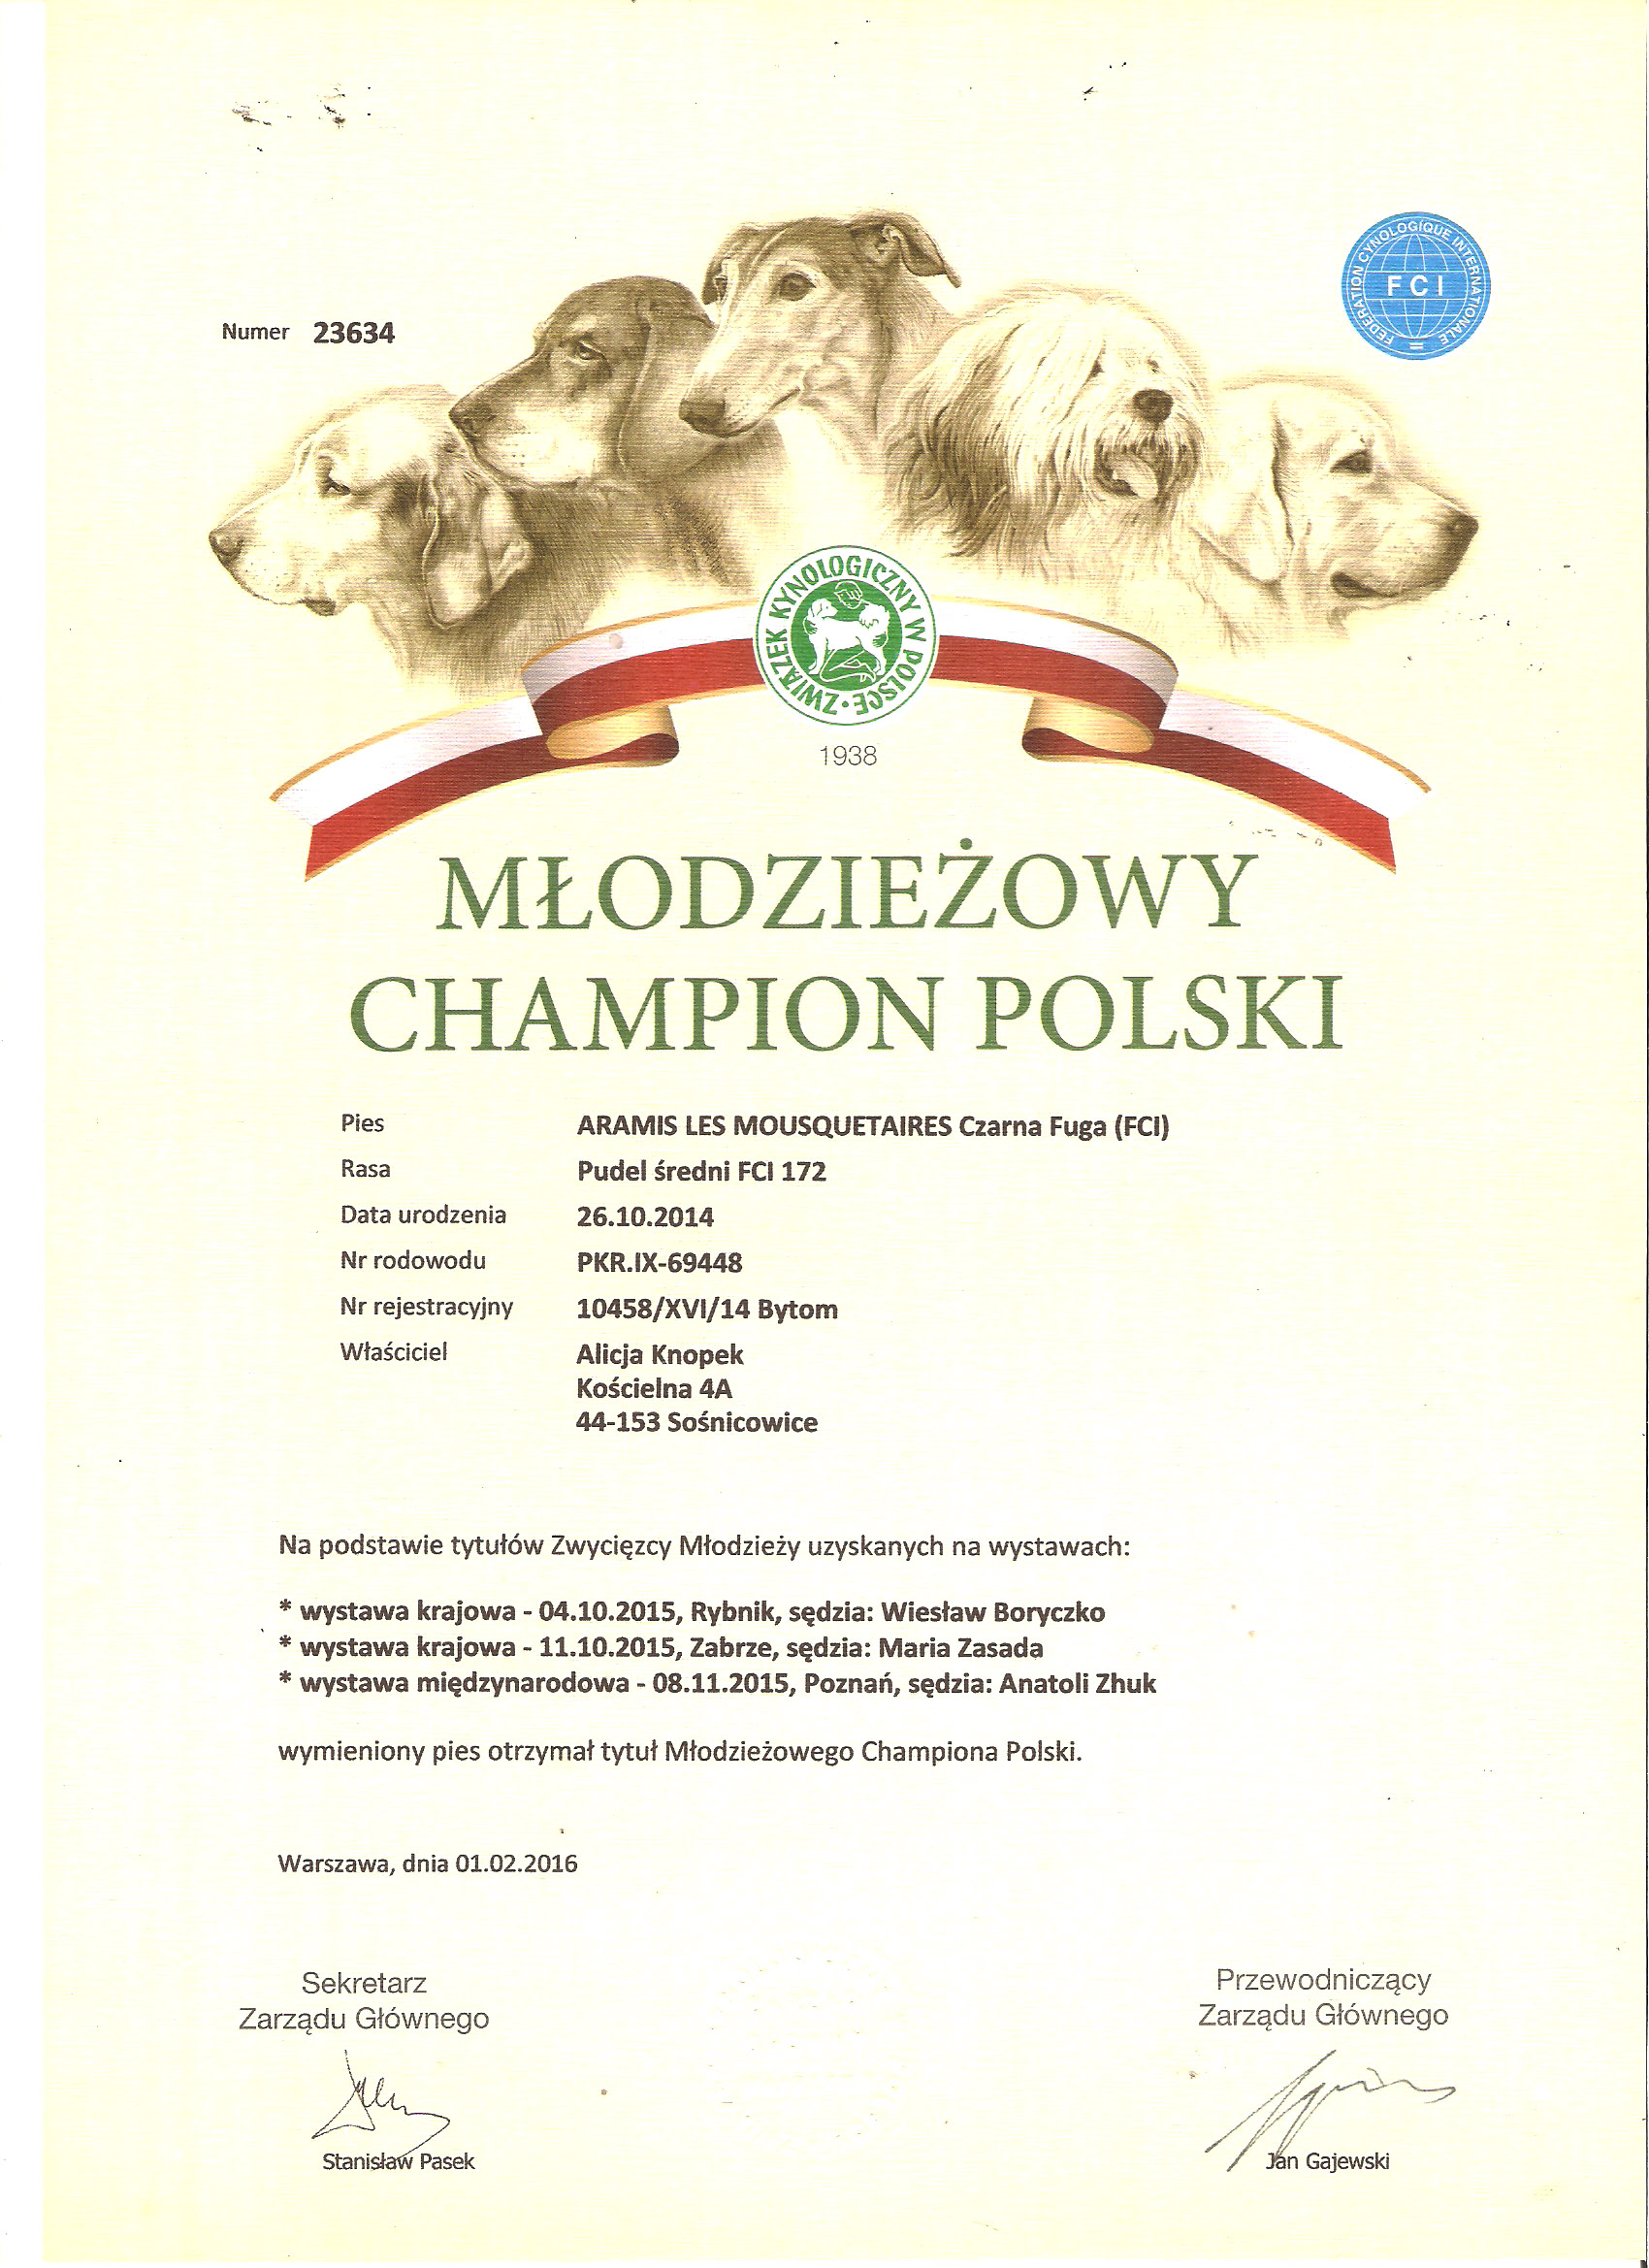 Młodzieżowy Champion Polski